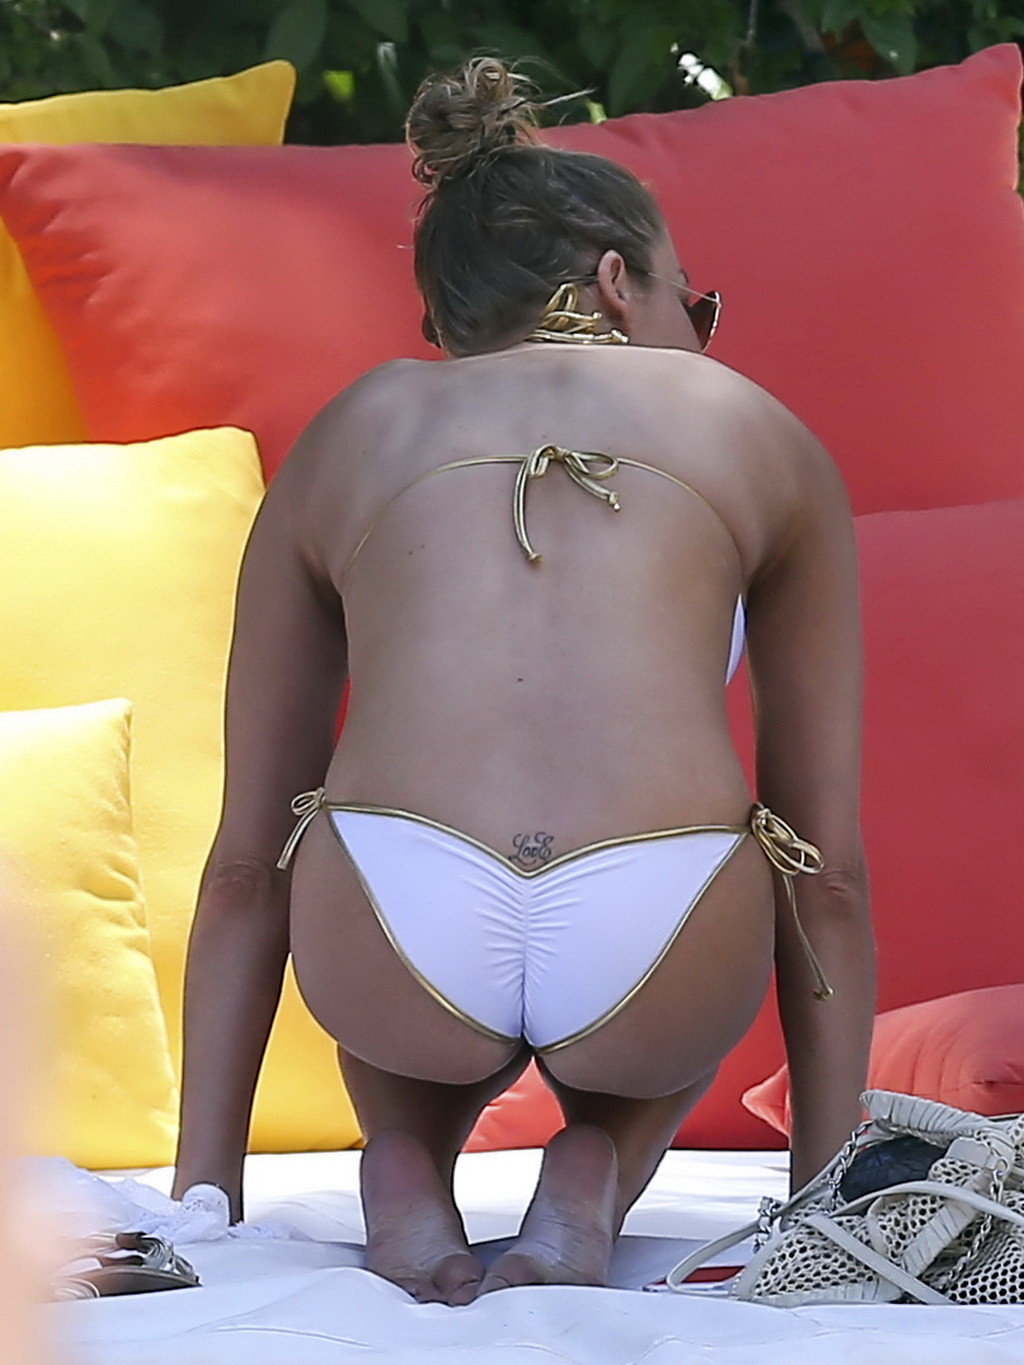 Leann rimes mostrando su cuerpo en bikini en una playa de miami
 #75235361